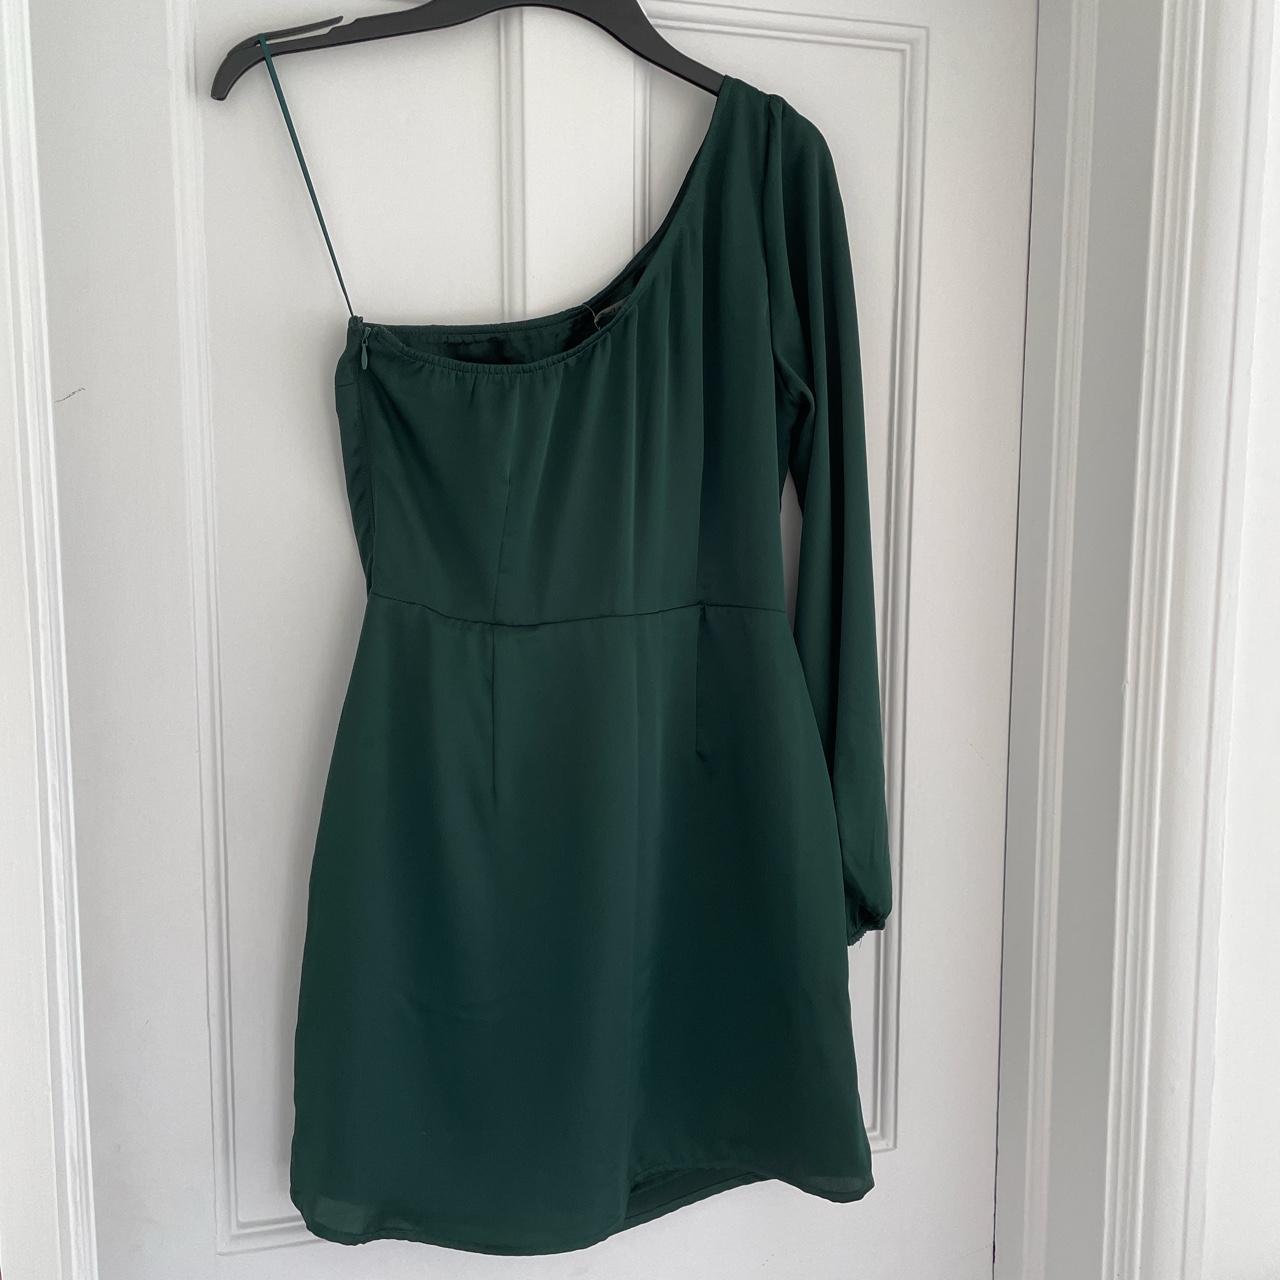 Abercrombie & Fitch Women's Green Dress | Depop